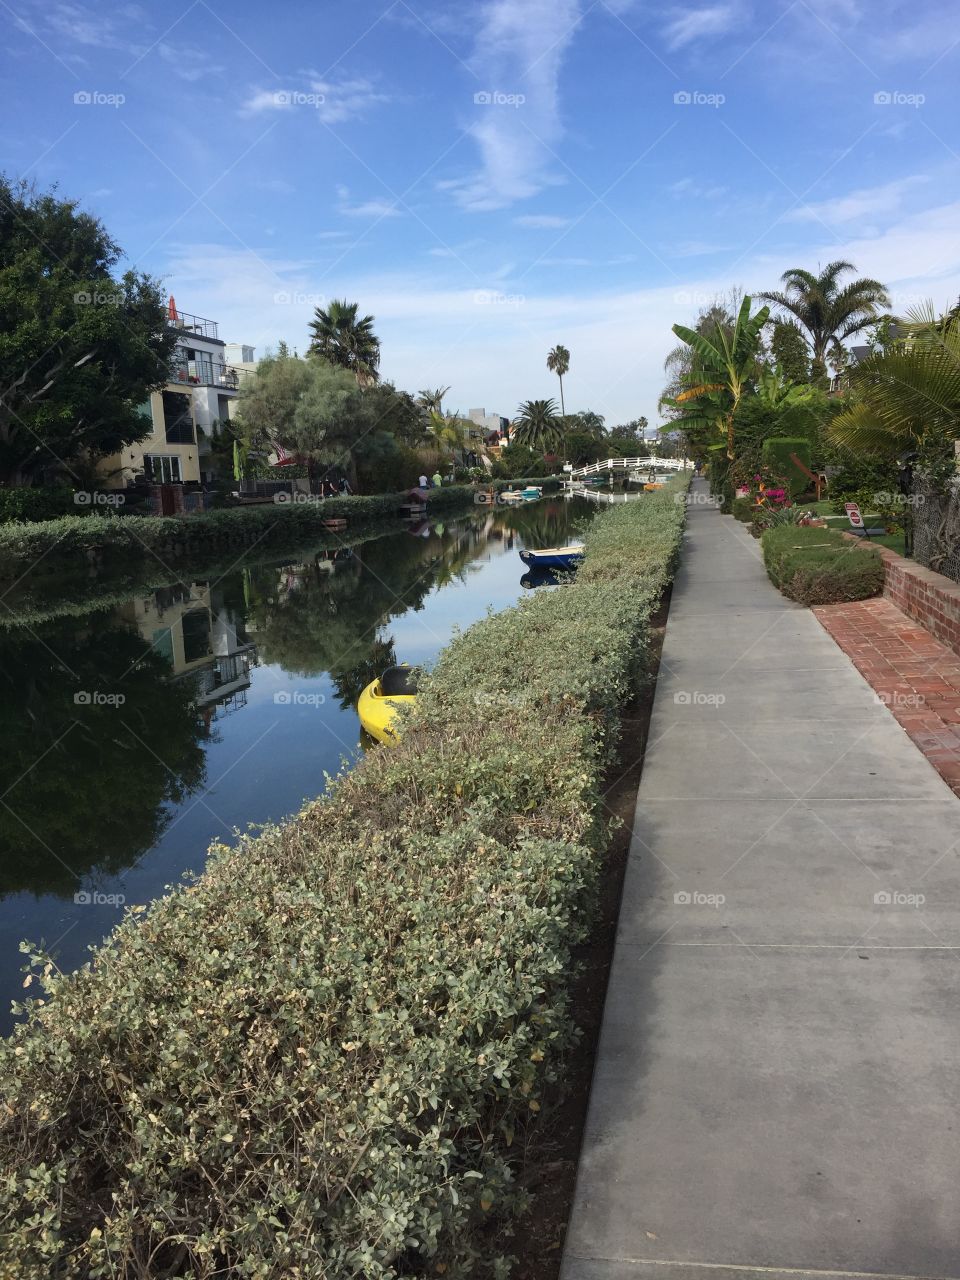 Venice Canals in LA 